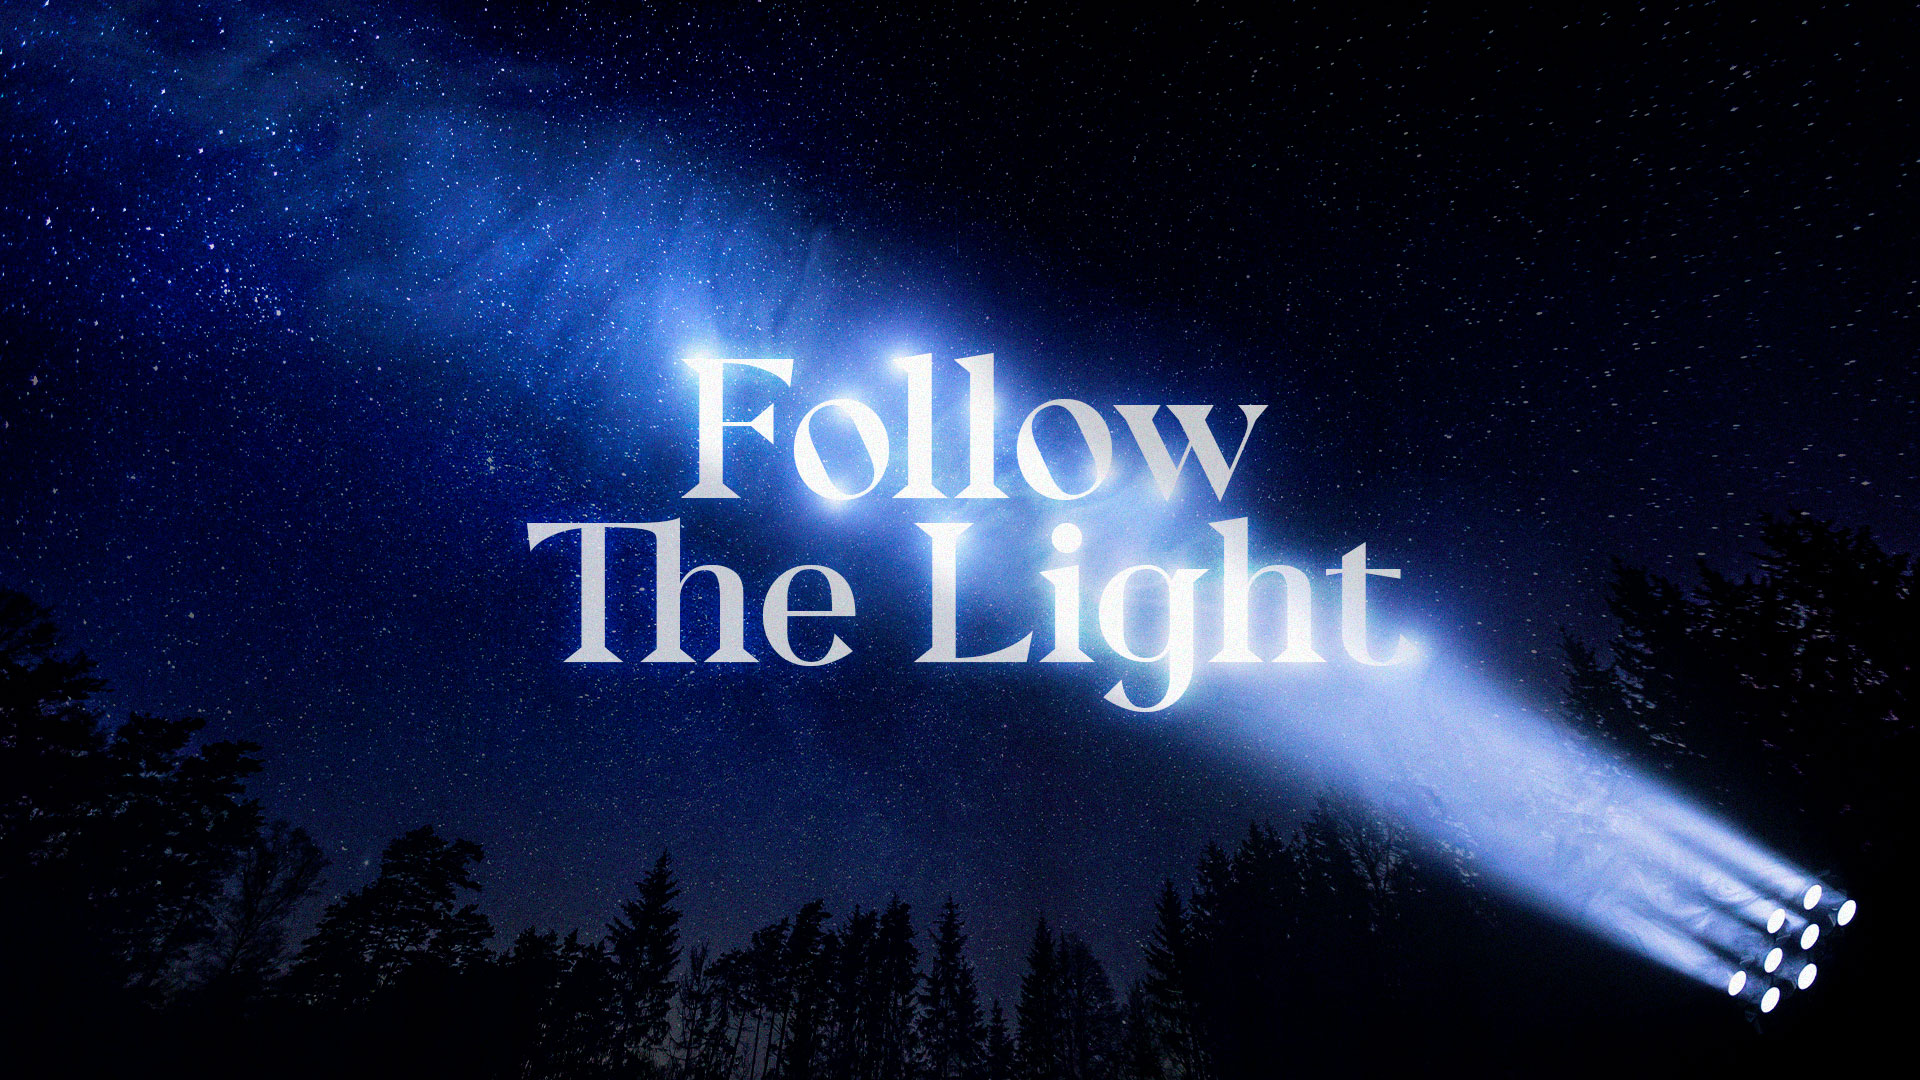   Follow The Light